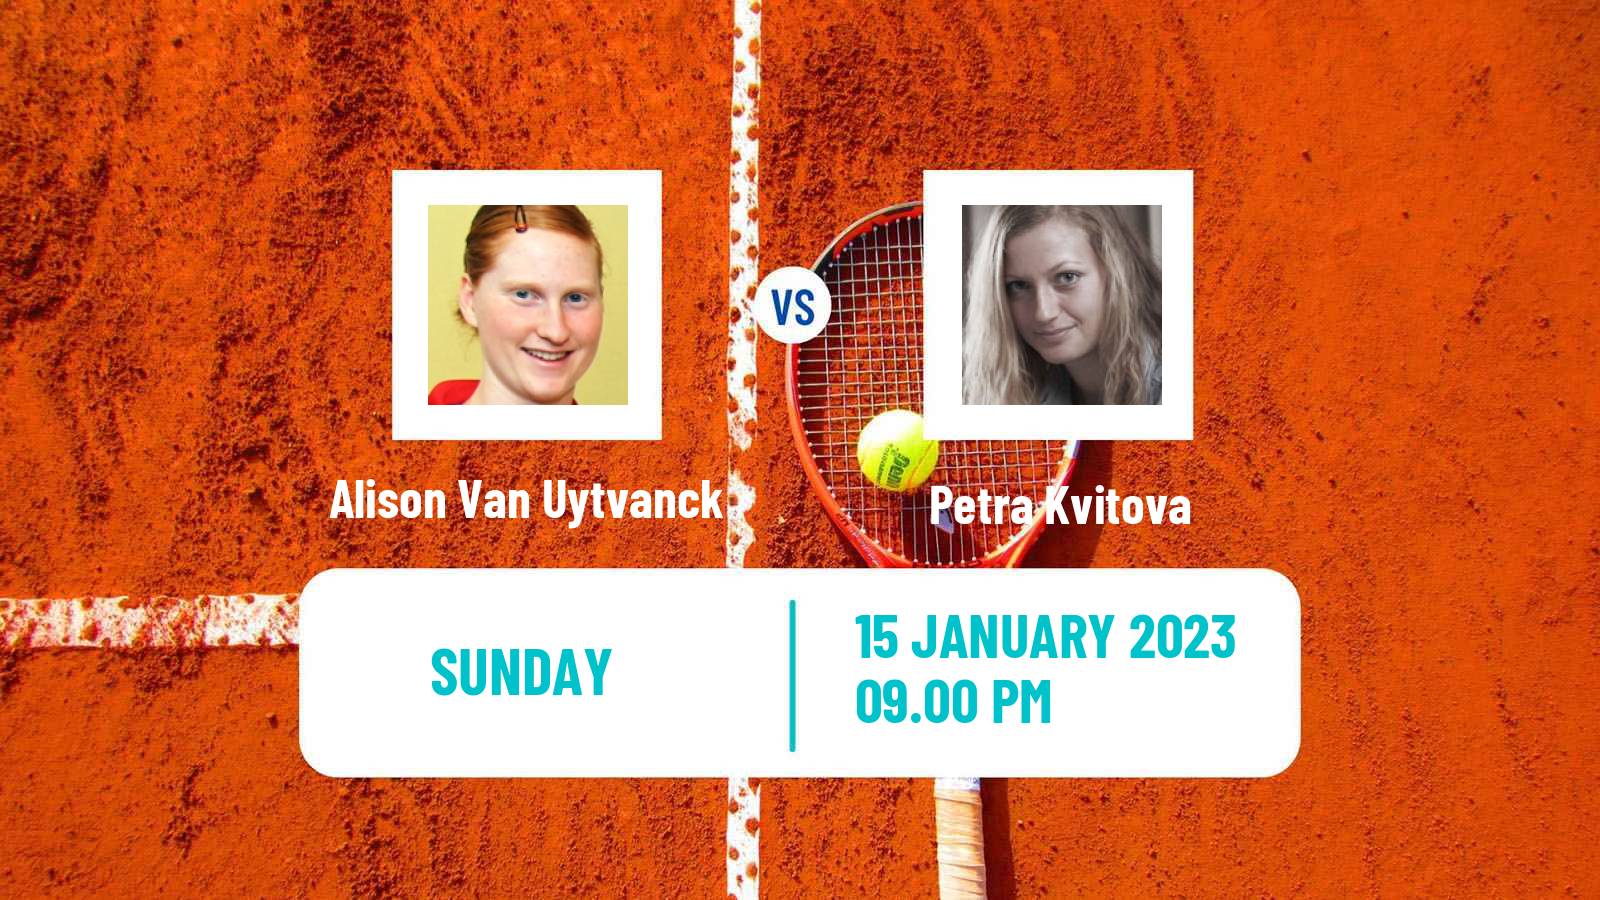 Tennis WTA Australian Open Alison Van Uytvanck - Petra Kvitova